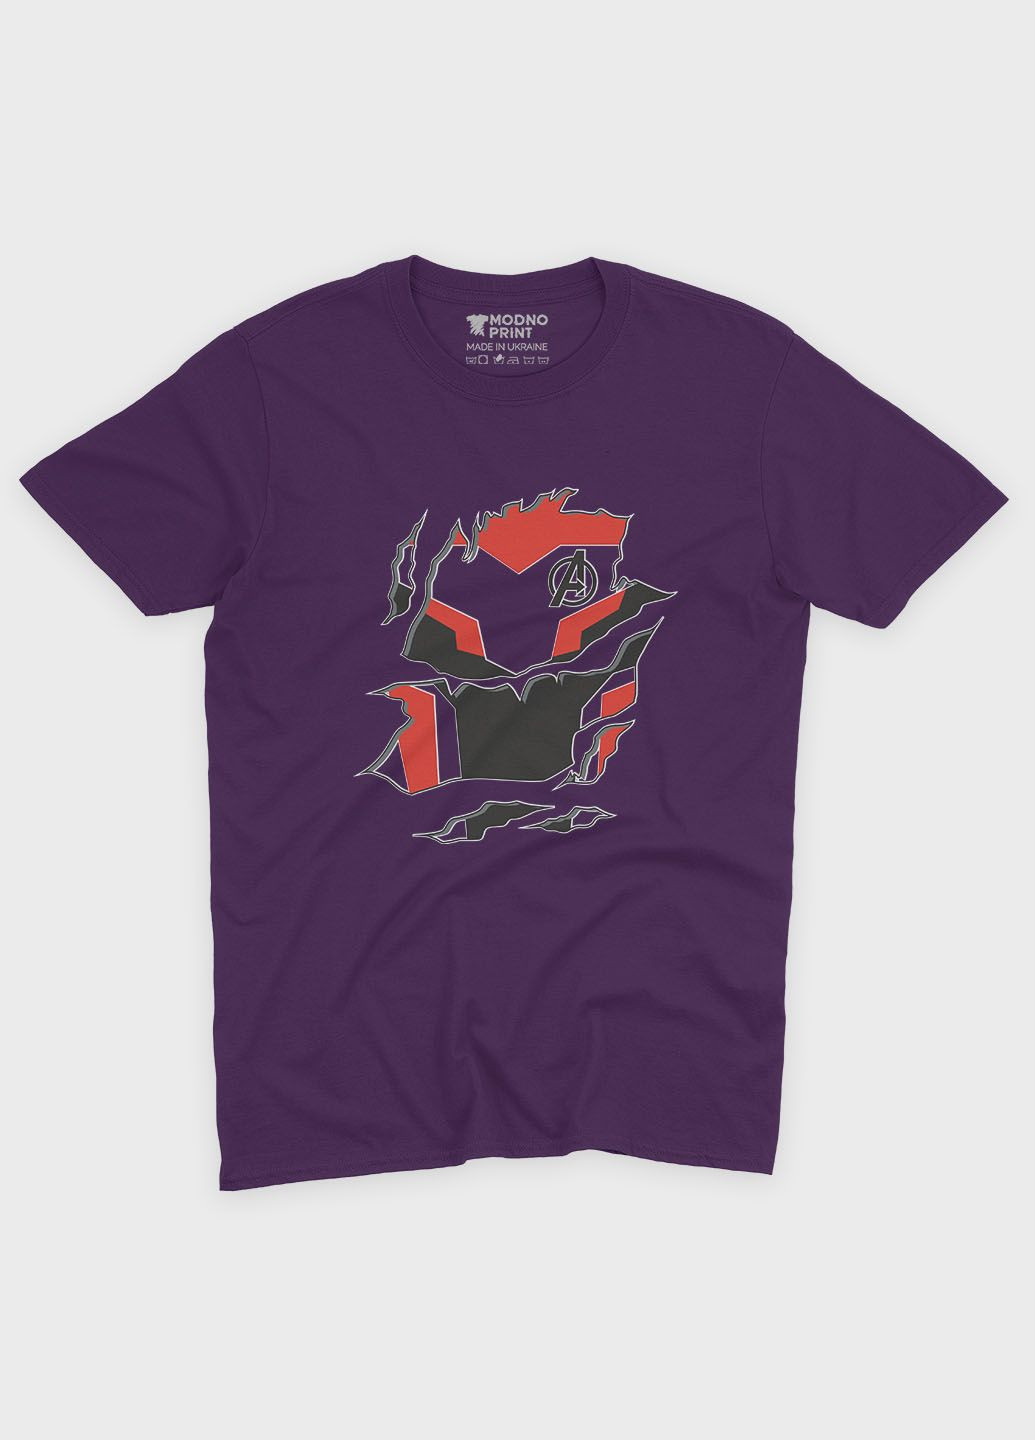 Фиолетовая демисезонная футболка для мальчика с принтом супергероя - железный человек (ts001-1-dby-006-016-006-b) Modno